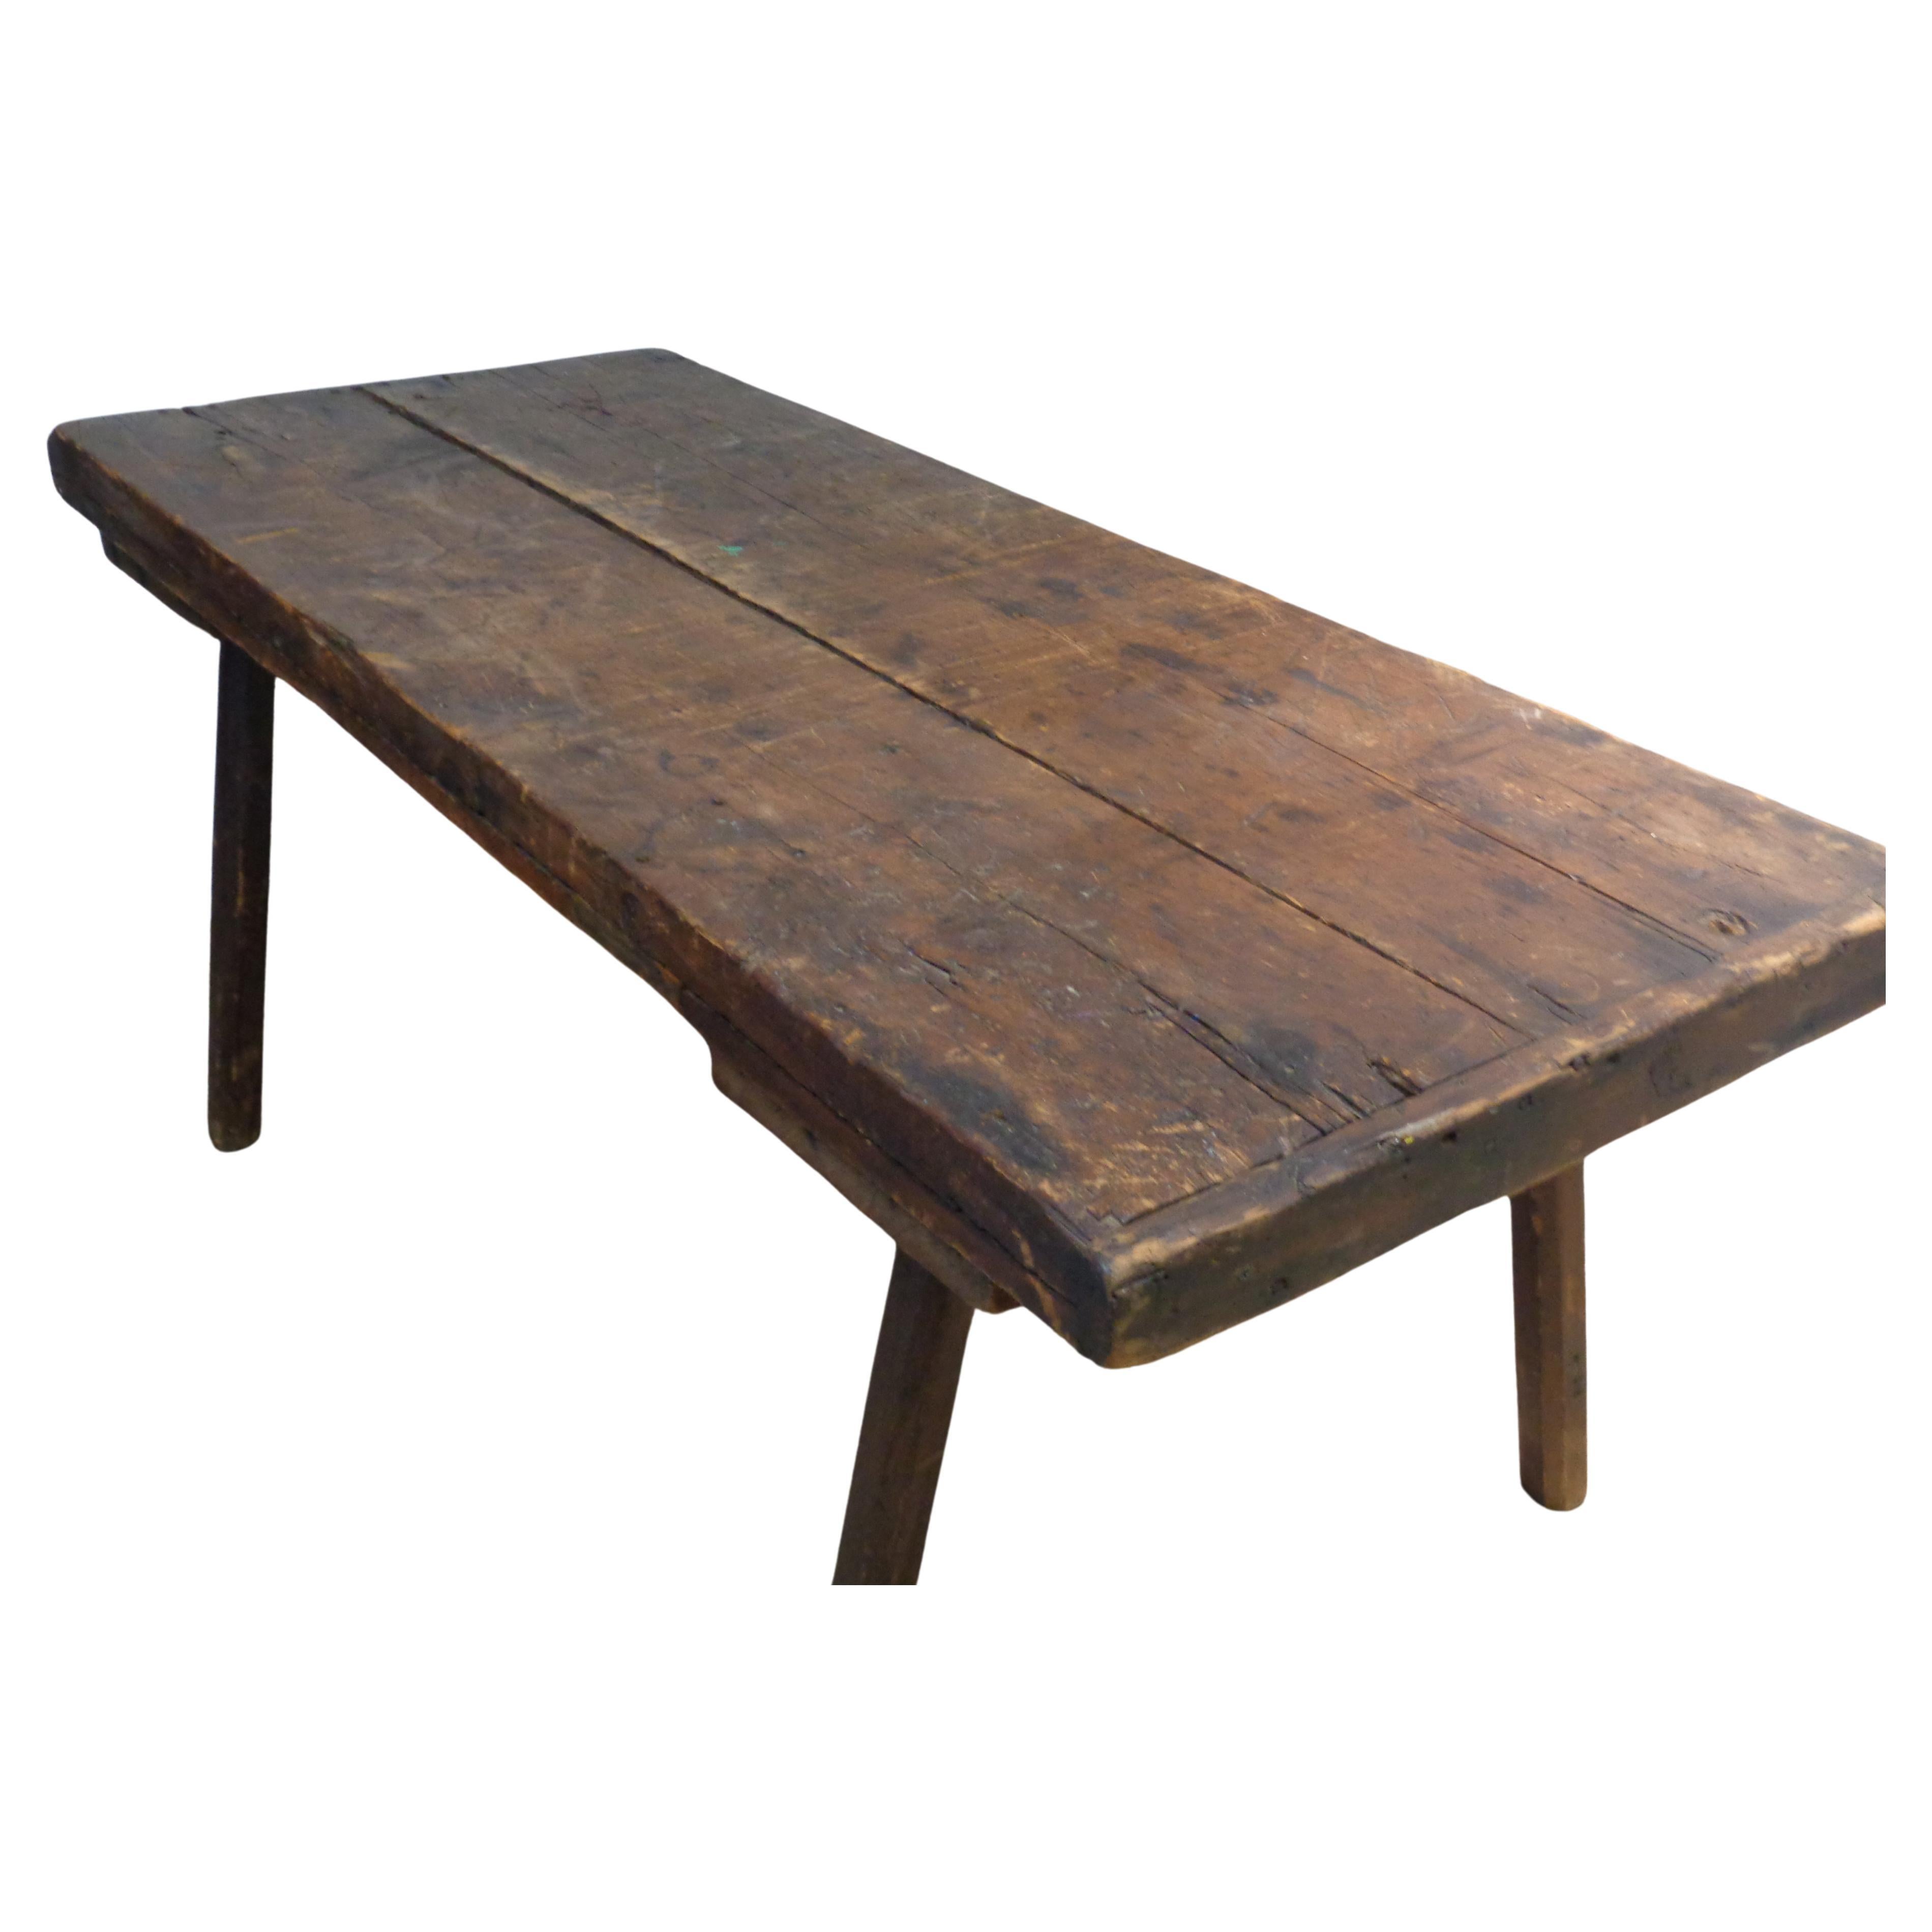 Ancienne table de boucherie primitive américaine du 19ème siècle avec patine d'origine parfaitement vieillie. Le plateau en bois de deux planches de trois pouces d'épaisseur avec les extrémités de la planche à pain est magnifiquement abîmé par de